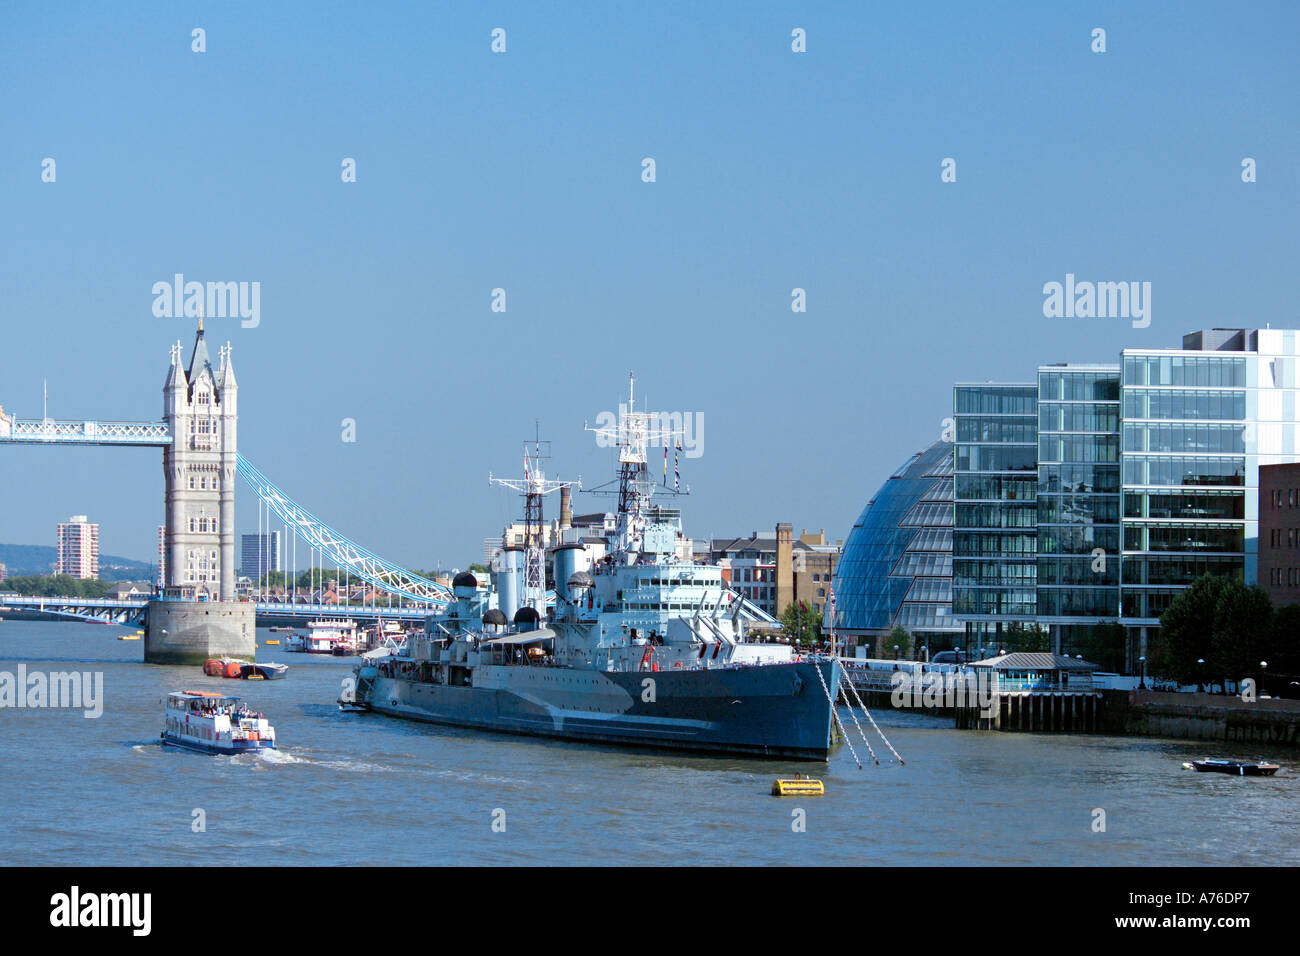 Una vista sul Tamigi con City Hall, Tower Bridge, HMS Belfast e di una imbarcazione da diporto contro un cielo blu. Foto Stock